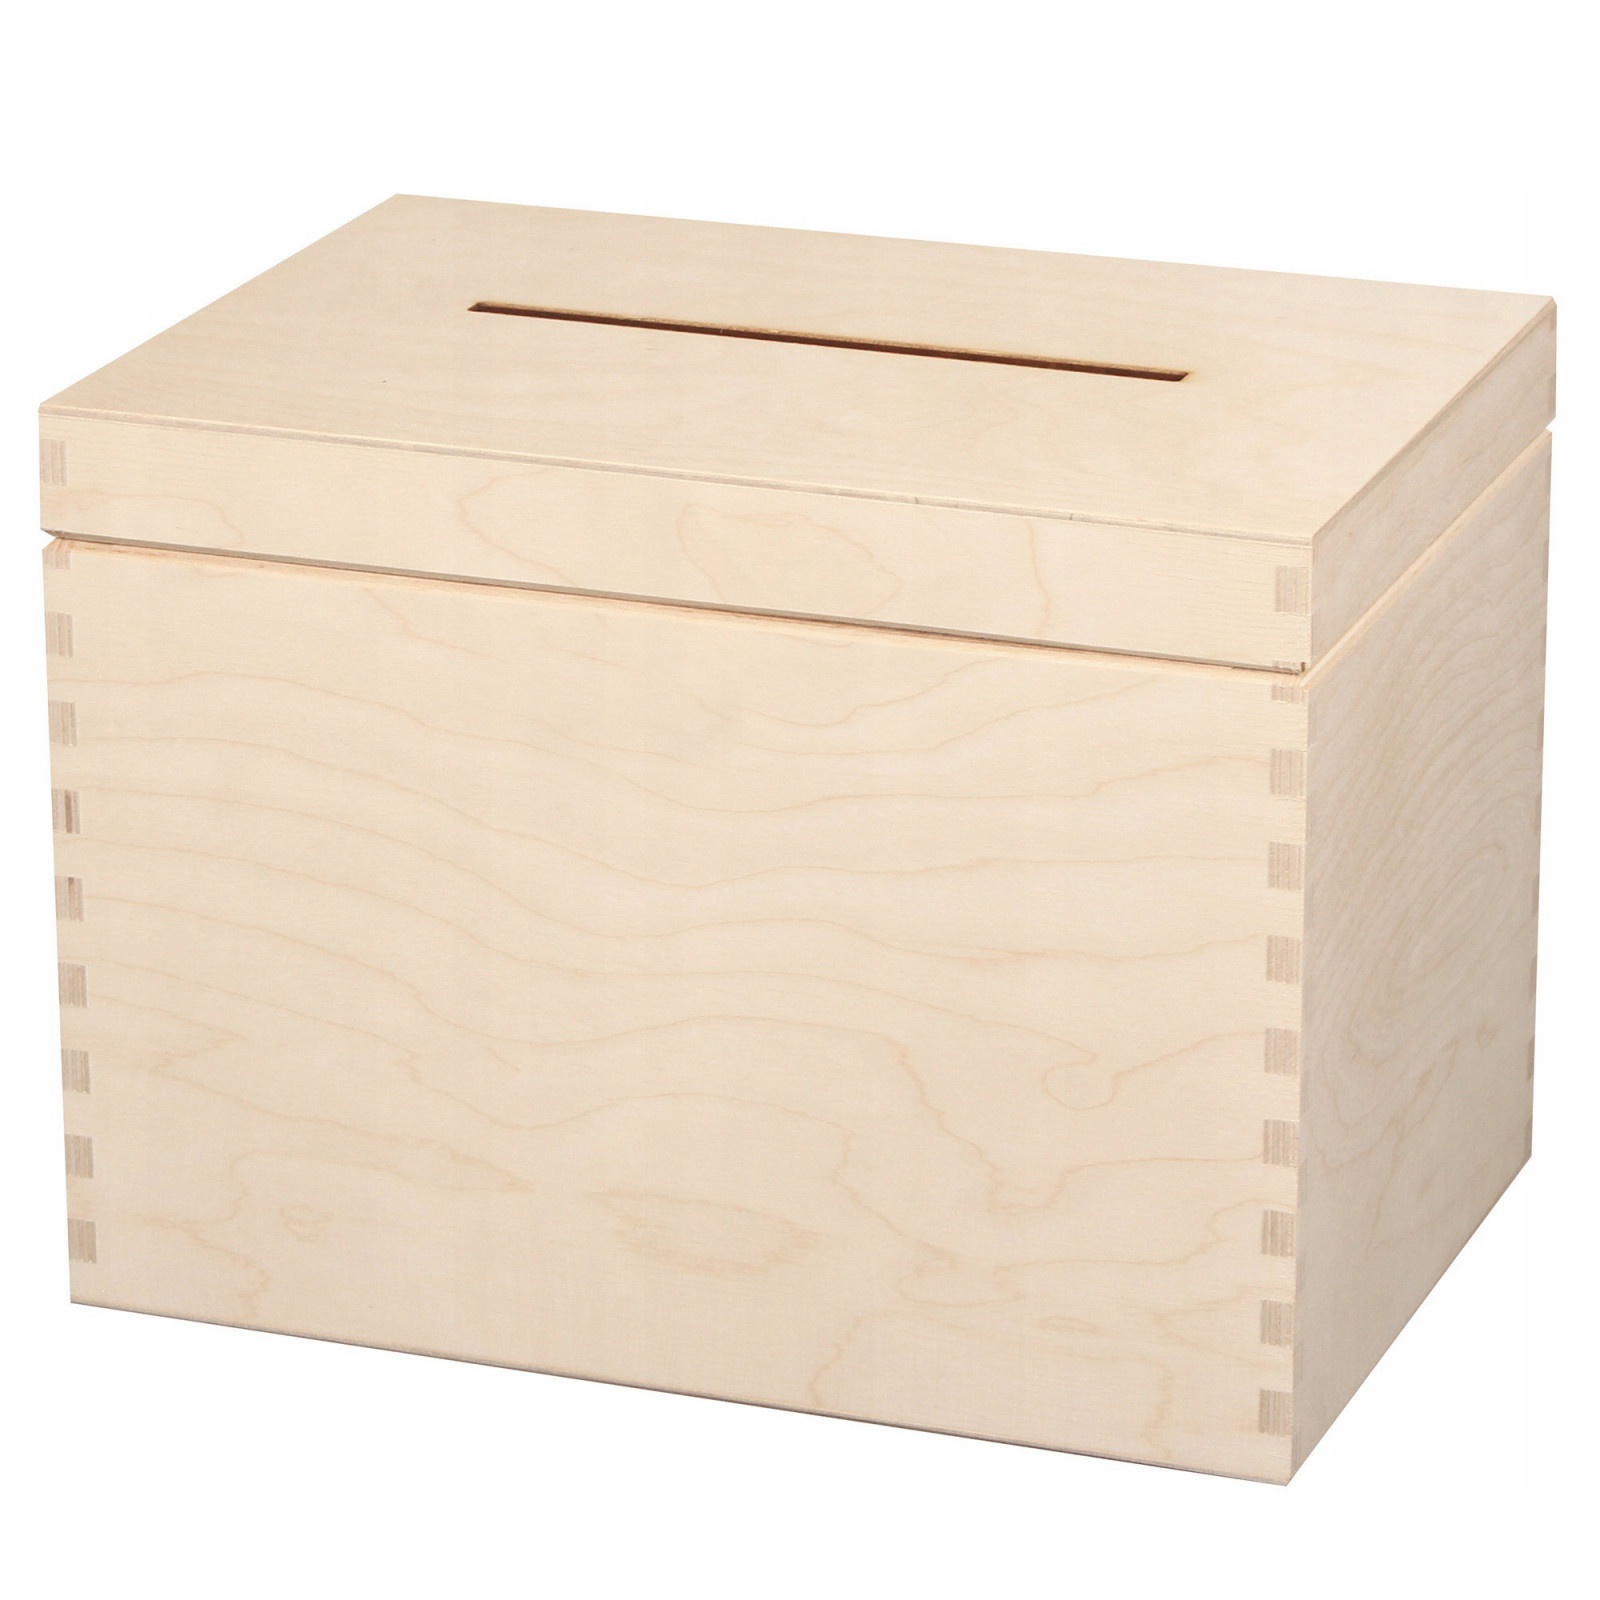 Drevený box 29x20x21cm krabička na svadbu obálky megamix.sk